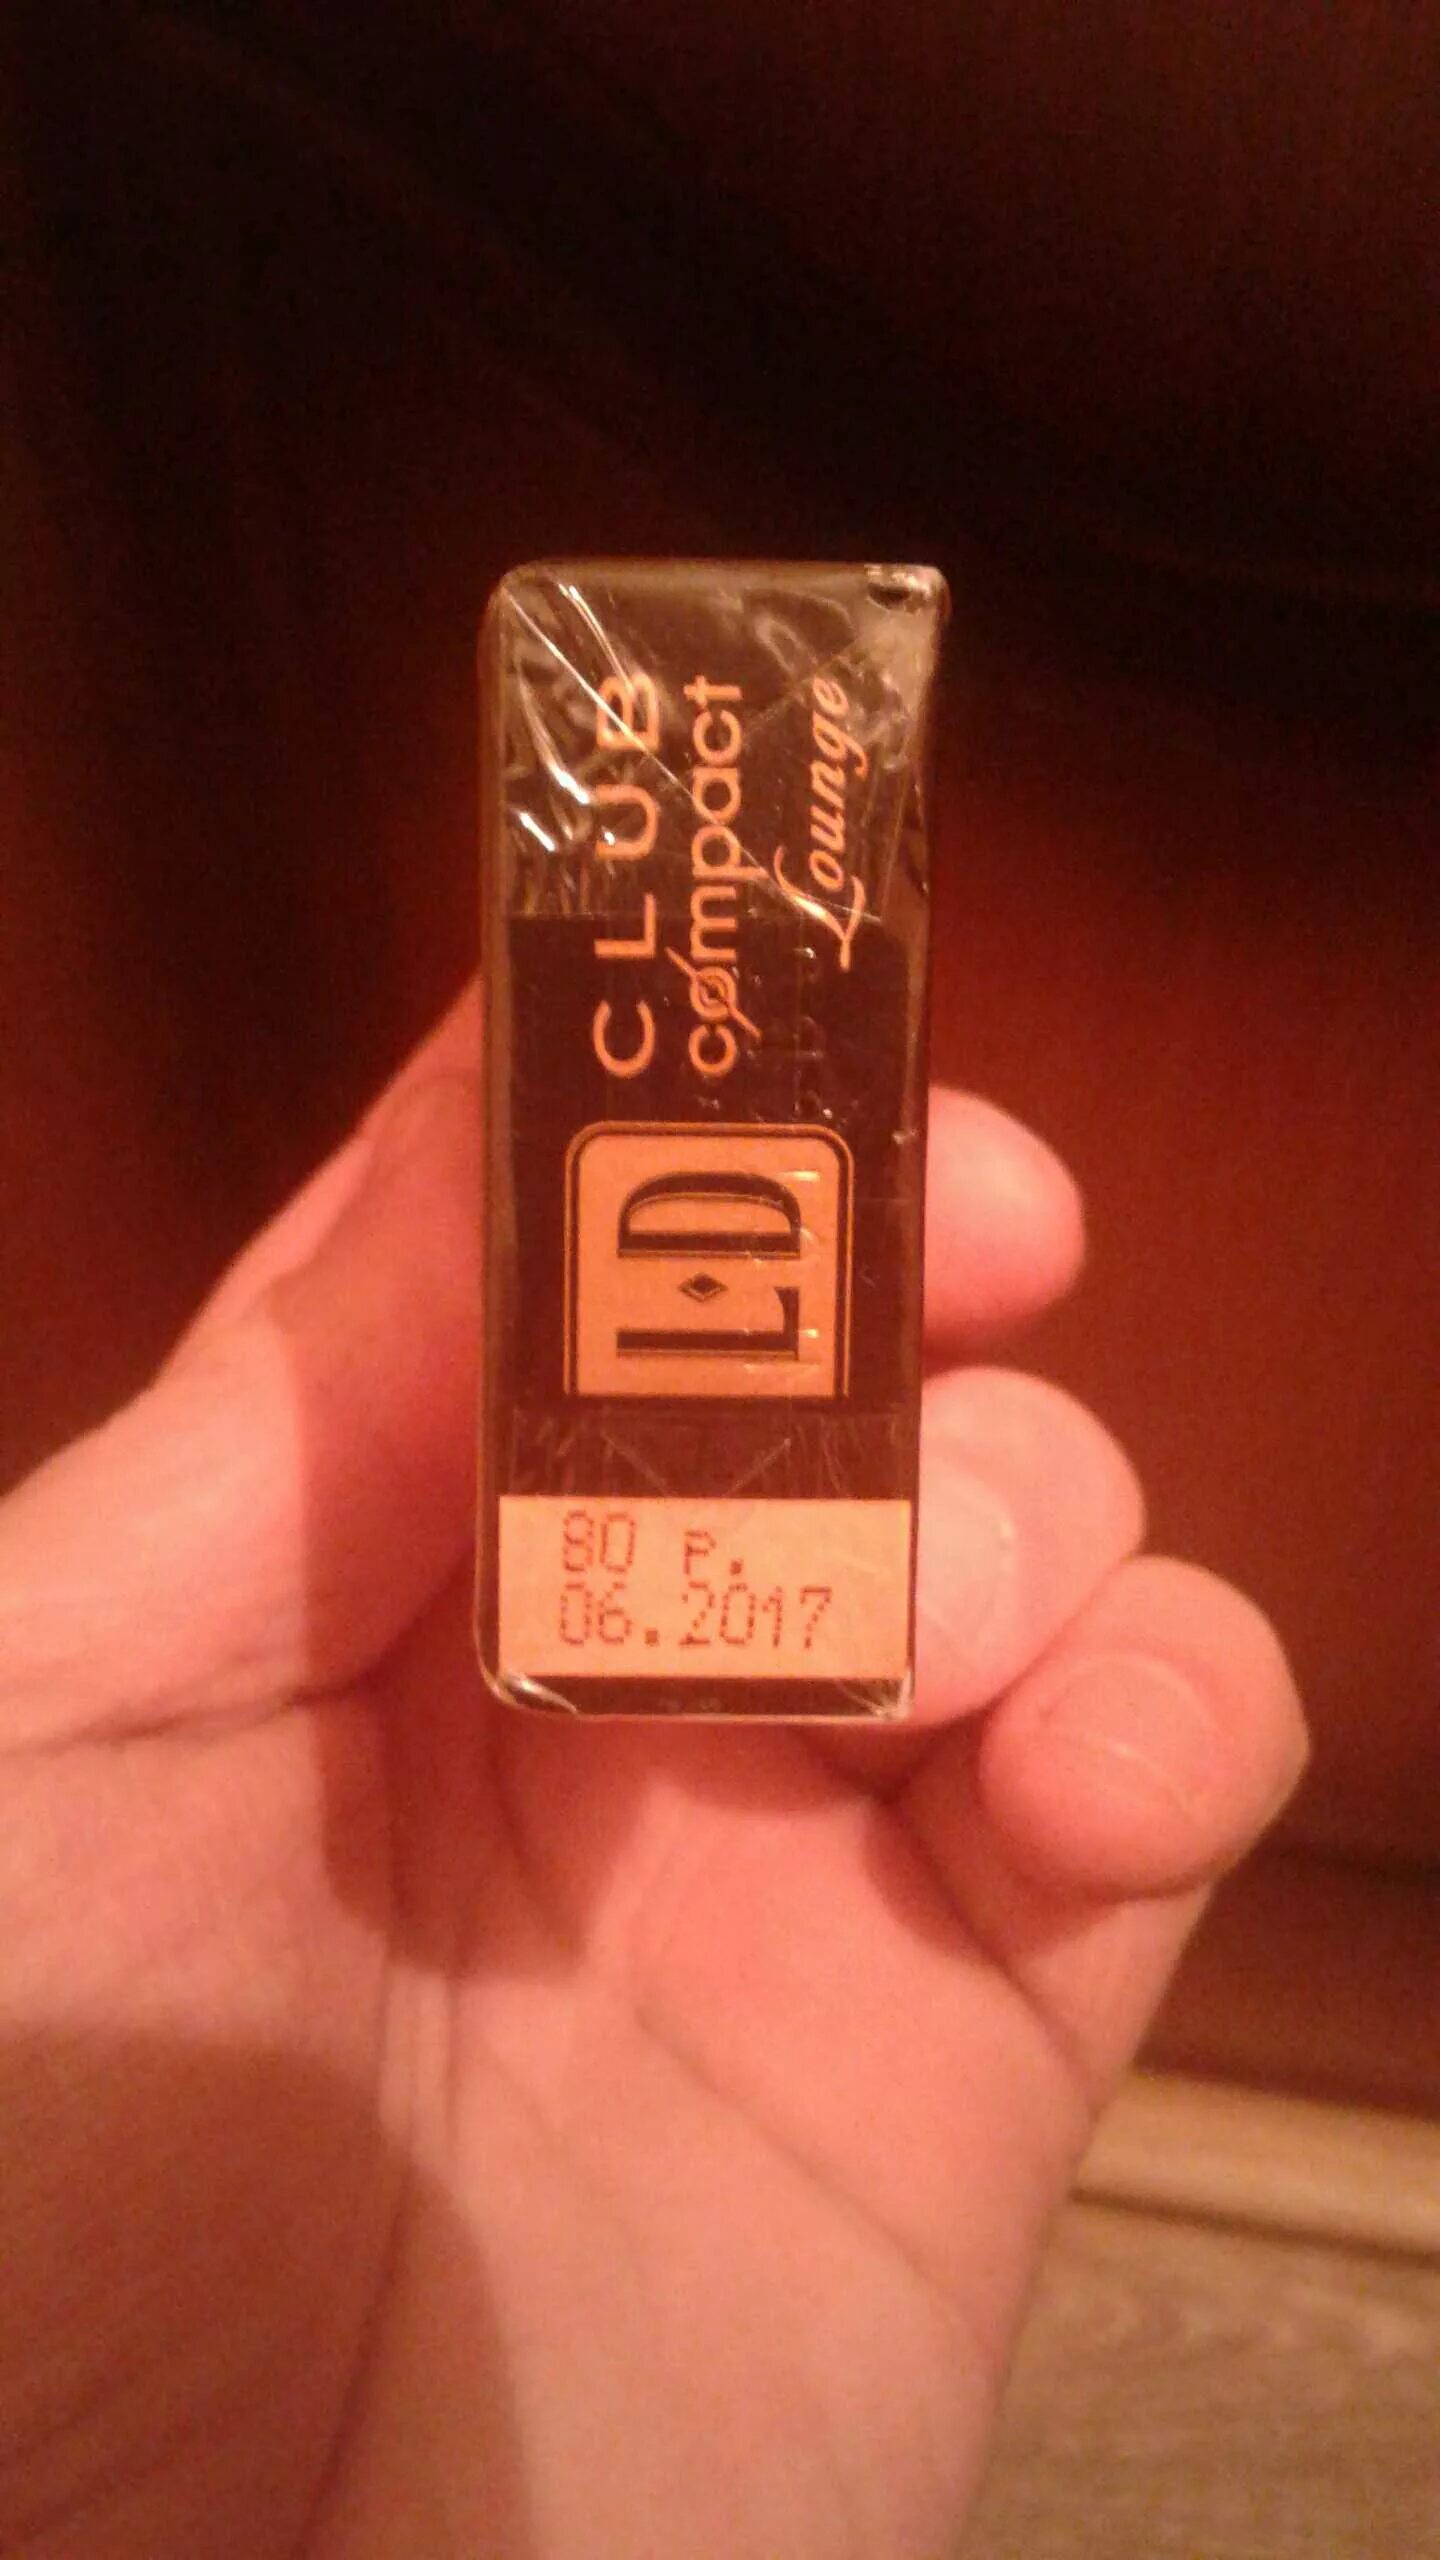 Лд коричневые сигареты. LD компакт лаунж. Сигареты LD компакт коричневый. LD Compact Lounge сигареты. Сигареты LD Compact шоколадные.